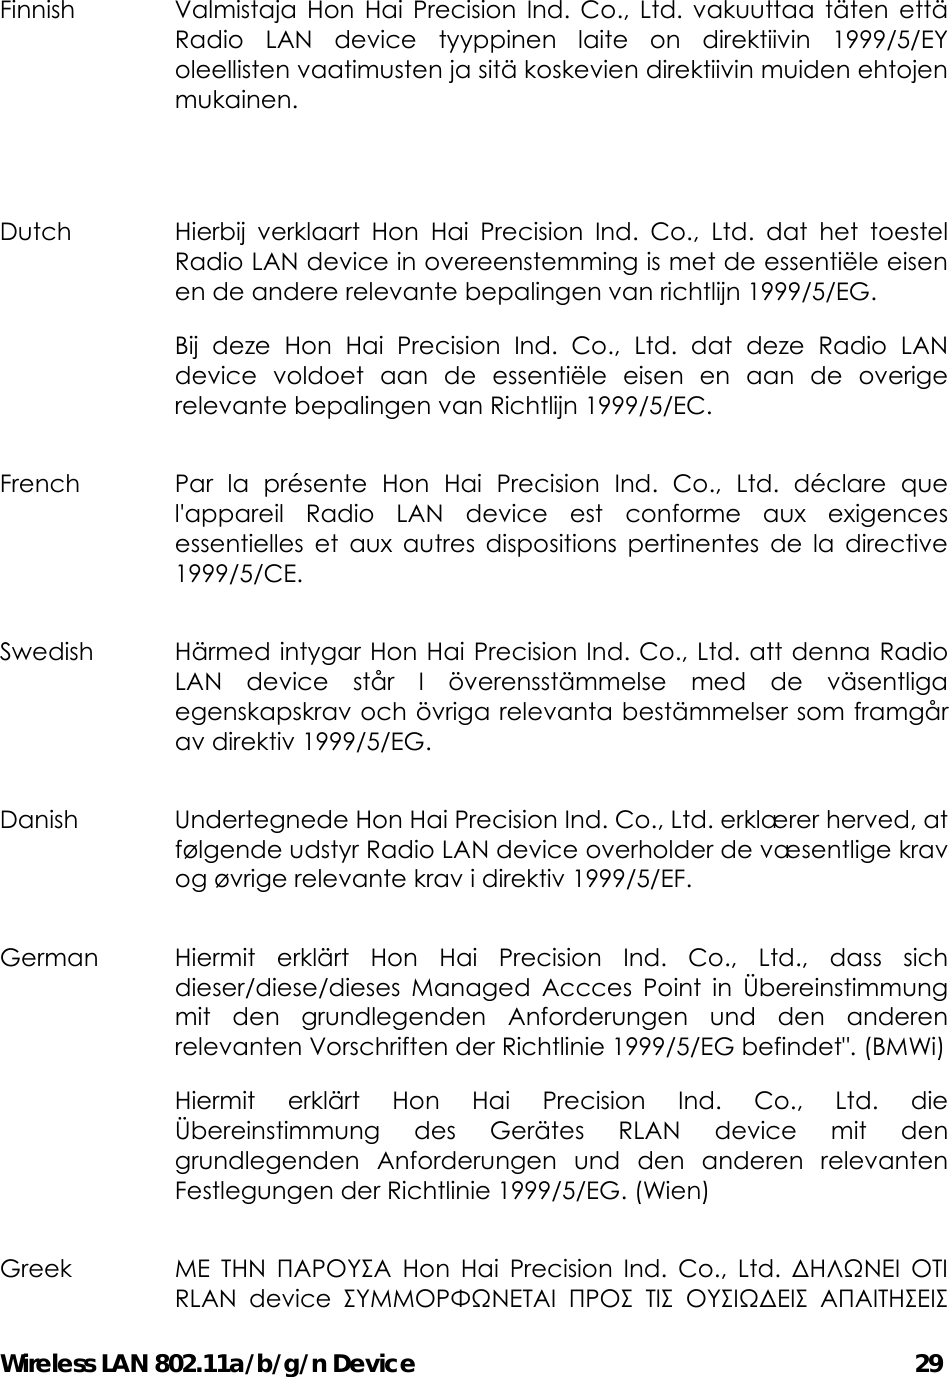 Wireless LAN 802.11a/b/g/n Device                                         29 Finnish  Valmistaja Hon Hai Precision Ind. Co., Ltd. vakuuttaa täten että Radio LAN device tyyppinen laite on direktiivin 1999/5/EY oleellisten vaatimusten ja sitä koskevien direktiivin muiden ehtojen mukainen.  Dutch  Hierbij verklaart Hon Hai Precision Ind. Co., Ltd. dat het toestel Radio LAN device in overeenstemming is met de essentiële eisen en de andere relevante bepalingen van richtlijn 1999/5/EG.   Bij deze Hon Hai Precision Ind. Co., Ltd. dat deze Radio LAN device voldoet aan de essentiële eisen en aan de overige relevante bepalingen van Richtlijn 1999/5/EC. French  Par la présente Hon Hai Precision Ind. Co., Ltd. déclare que l&apos;appareil Radio LAN device est conforme aux exigences essentielles et aux autres dispositions pertinentes de la directive 1999/5/CE. Swedish  Härmed intygar Hon Hai Precision Ind. Co., Ltd. att denna Radio LAN device står I överensstämmelse med de väsentliga egenskapskrav och övriga relevanta bestämmelser som framgår av direktiv 1999/5/EG. Danish  Undertegnede Hon Hai Precision Ind. Co., Ltd. erklærer herved, at følgende udstyr Radio LAN device overholder de væsentlige krav og øvrige relevante krav i direktiv 1999/5/EF. German  Hiermit erklärt Hon Hai Precision Ind. Co., Ltd., dass sich dieser/diese/dieses Managed Accces Point in Übereinstimmung mit den grundlegenden Anforderungen und den anderen relevanten Vorschriften der Richtlinie 1999/5/EG befindet&quot;. (BMWi)  Hiermit erklärt Hon Hai Precision Ind. Co., Ltd. die Übereinstimmung des Gerätes RLAN device mit den grundlegenden Anforderungen und den anderen relevanten Festlegungen der Richtlinie 1999/5/EG. (Wien)   Greek  ΜΕ ΤΗΝ ΠΑΡΟΥΣΑ Hon Hai Precision Ind. Co., Ltd. ΔΗΛΩΝΕΙ ΟΤΙ RLAN device ΣΥΜΜΟΡΦΩΝΕΤΑΙ ΠΡΟΣ ΤΙΣ ΟΥΣΙΩΔΕΙΣ ΑΠΑΙΤΗΣΕΙΣ 